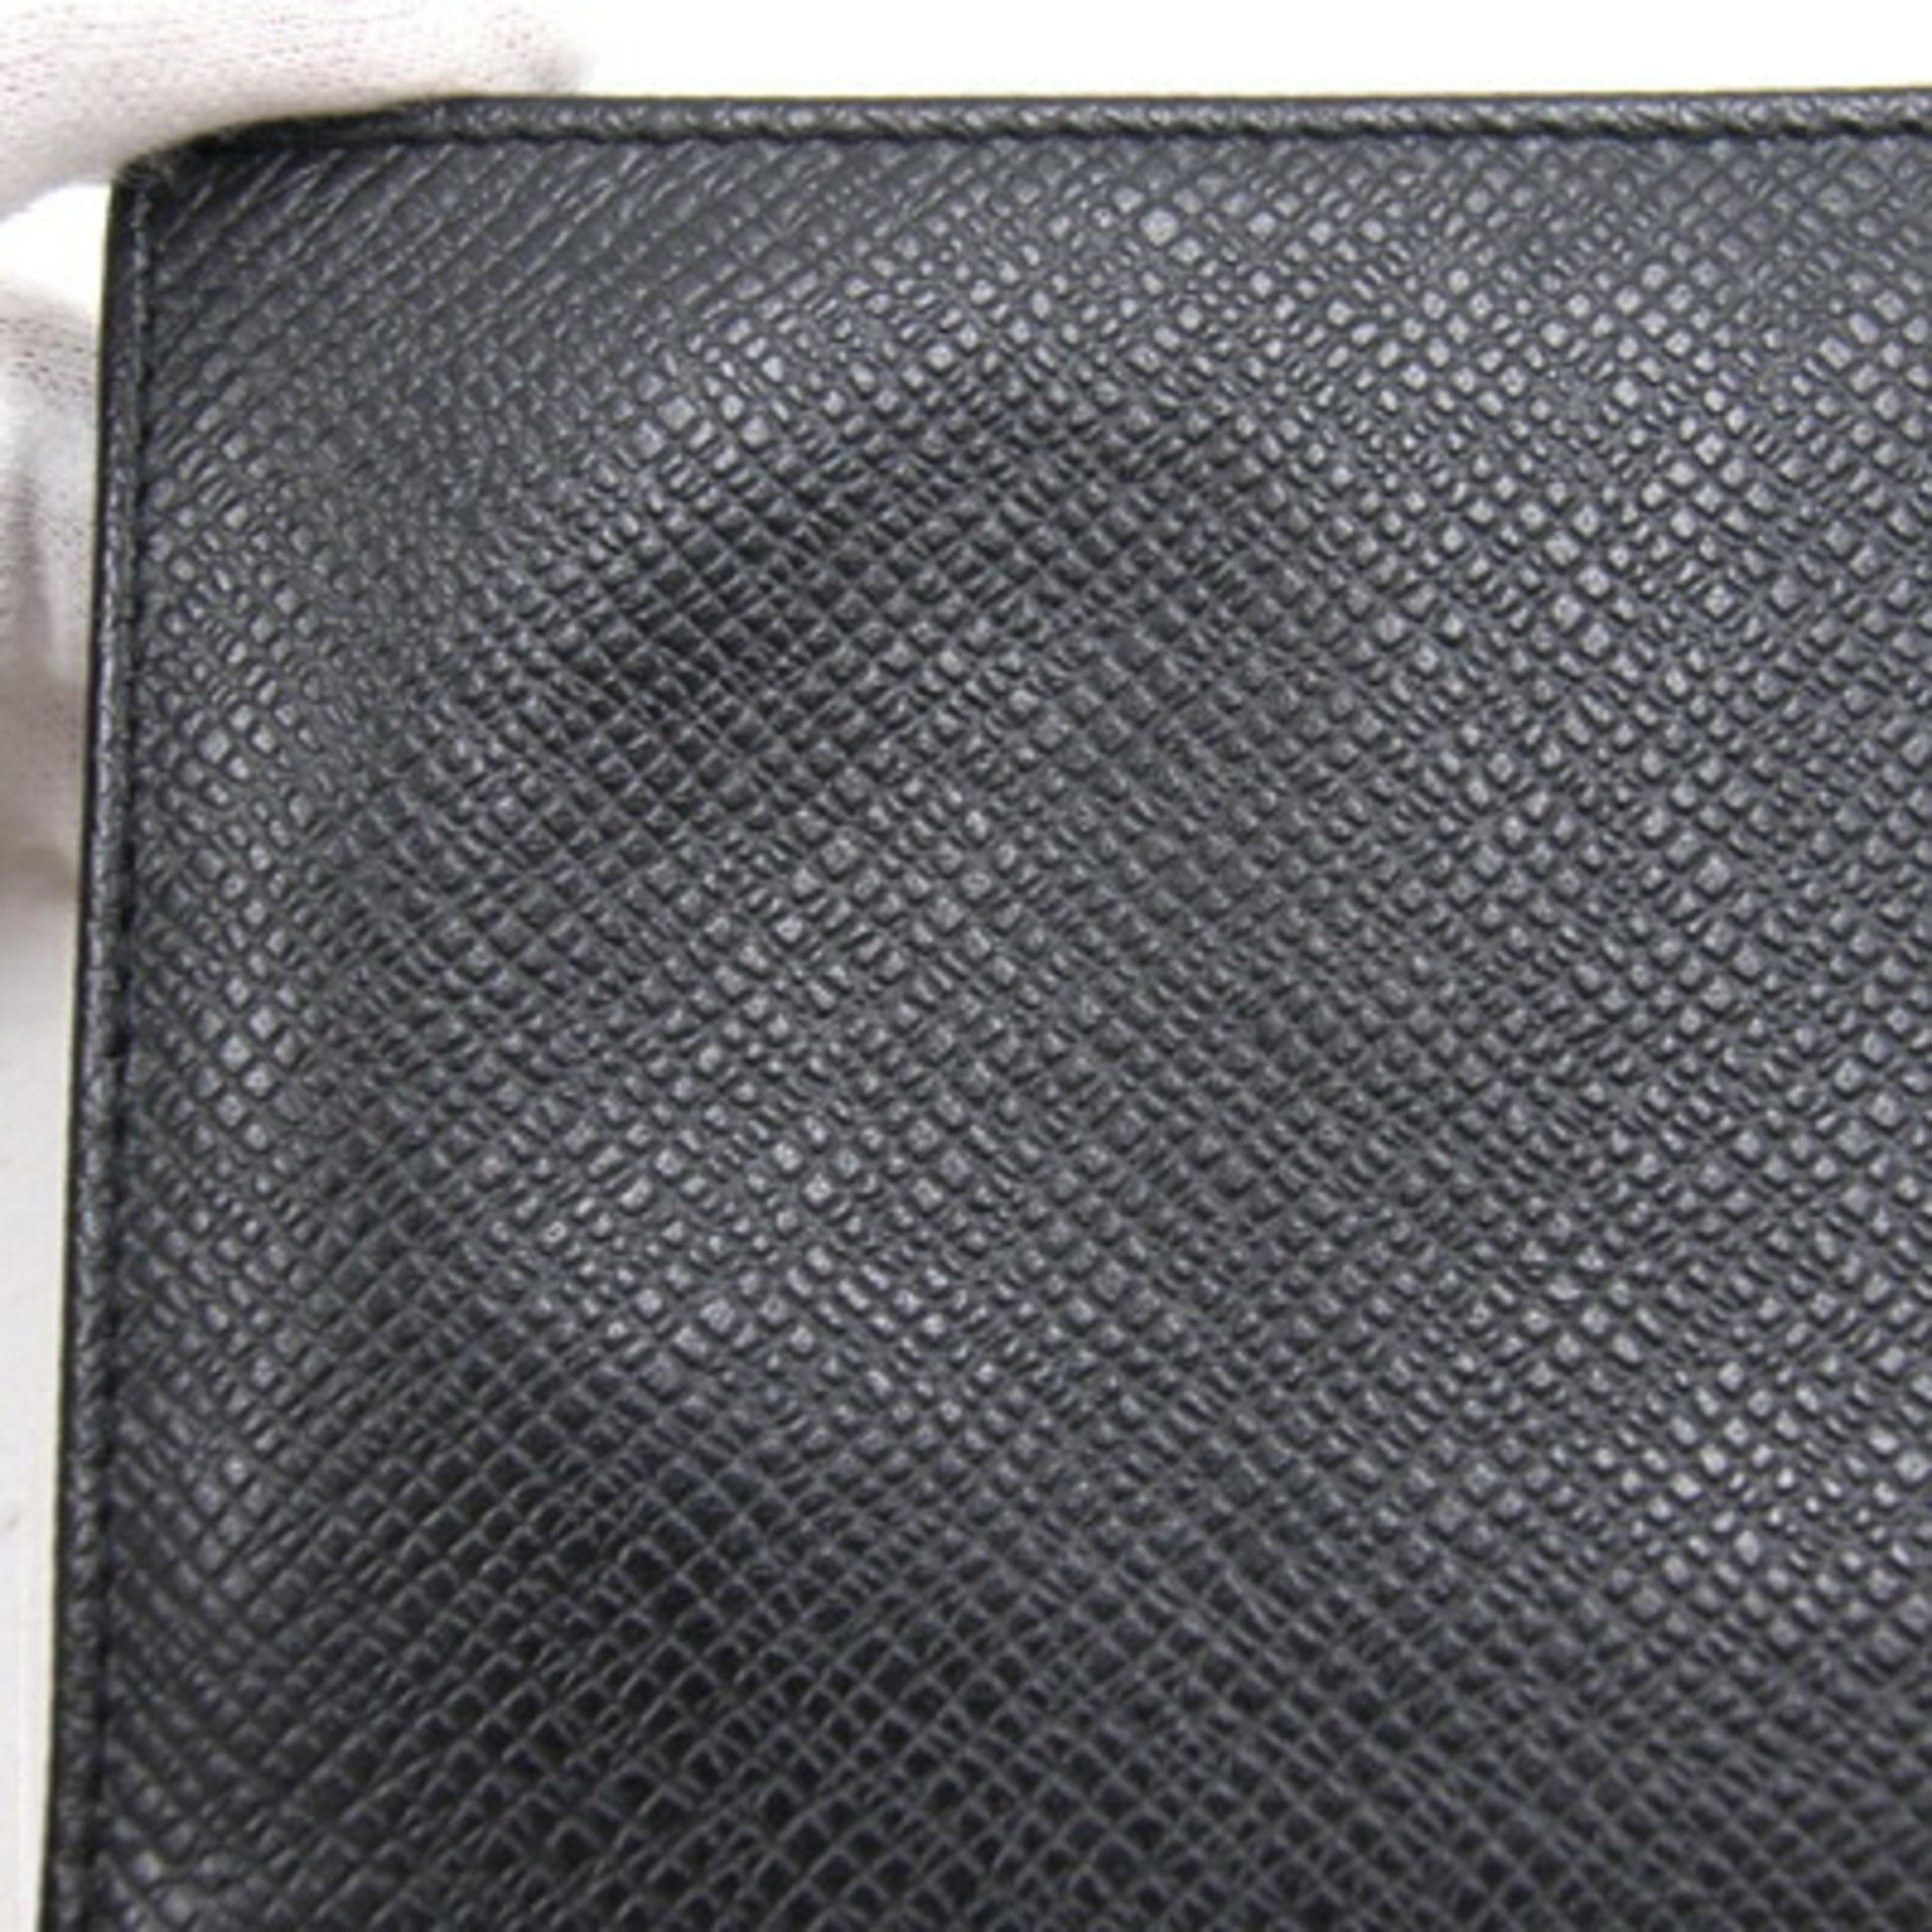 Kdj Inspired - Unisex 0739C - L'Immensité Louis Vuitton for men & women